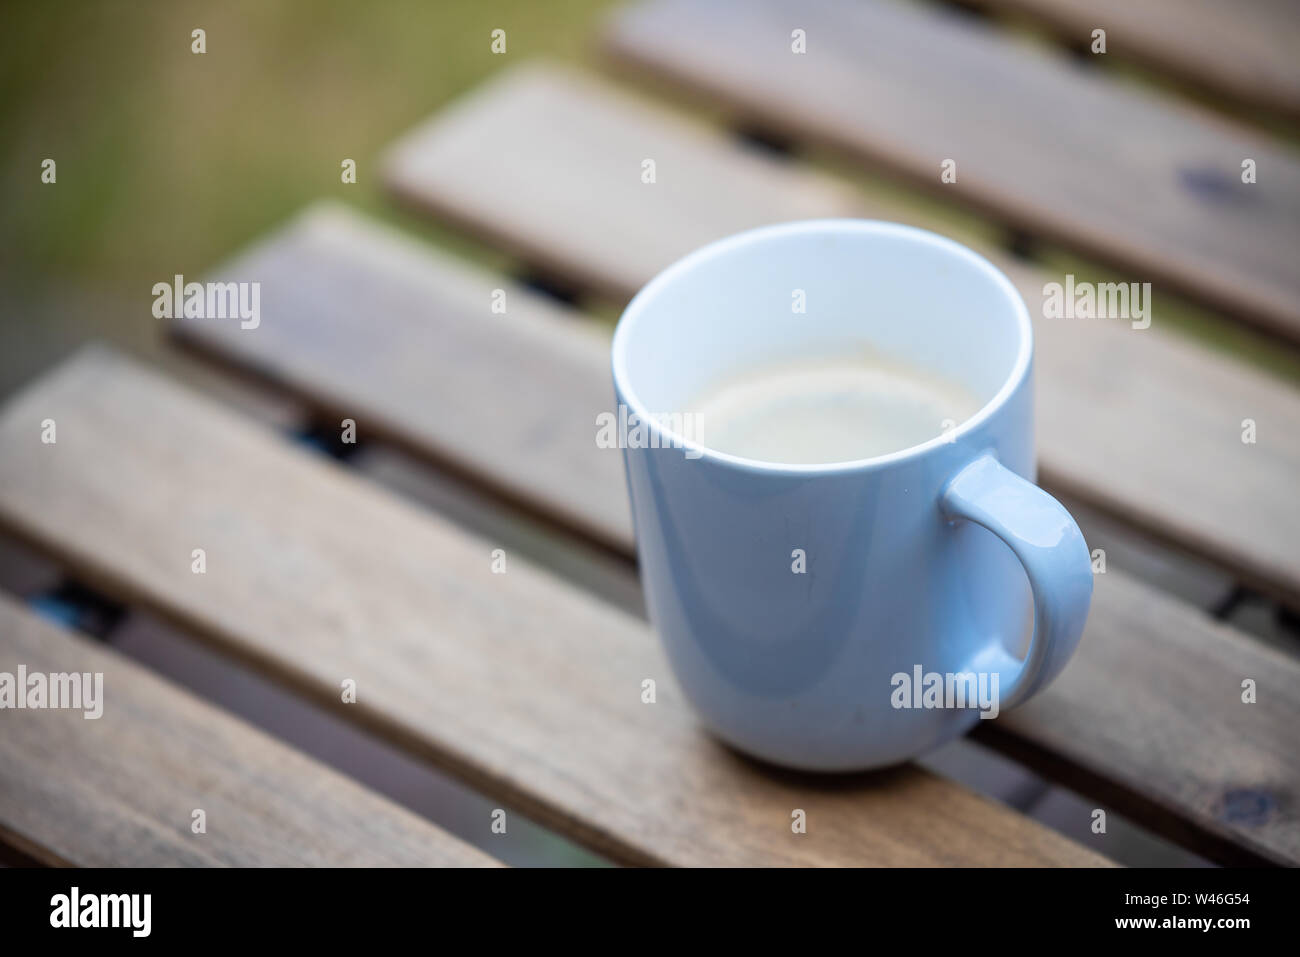 Assis dans le jardin tôt le matin, avec une tasse de café chaud Banque D'Images